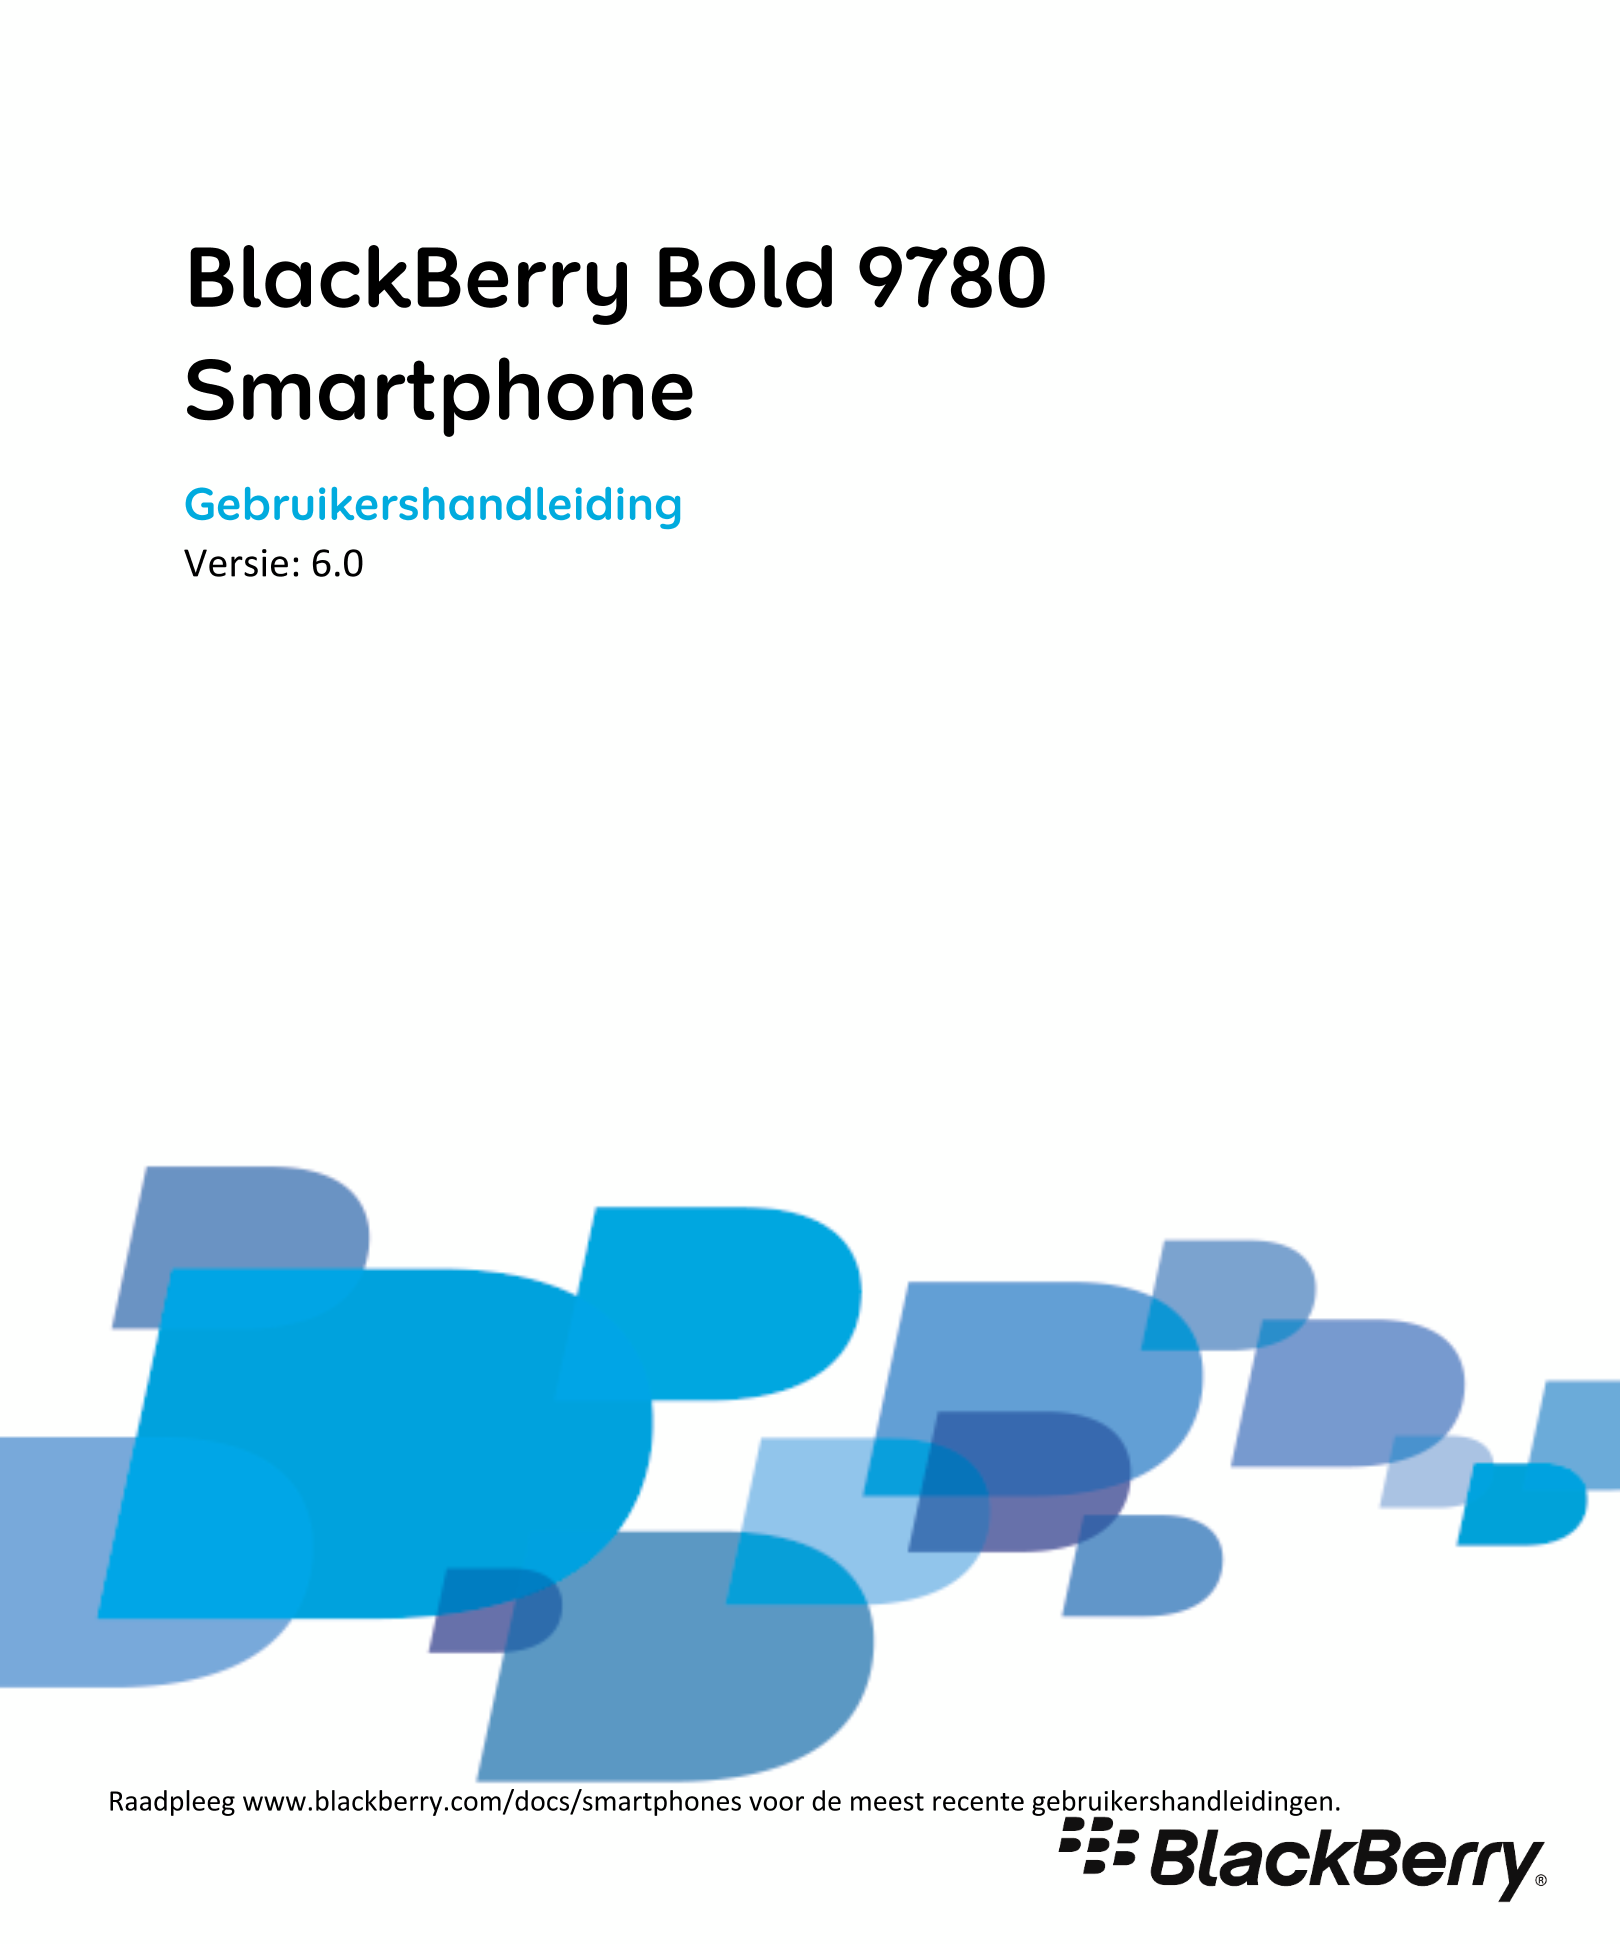 BlackBerry Bold 9780
Smartphone
Gebruikershandleiding
Versie: 6.0
Raadpleeg www.blackberry.com/docs/smartphones voor de meest re